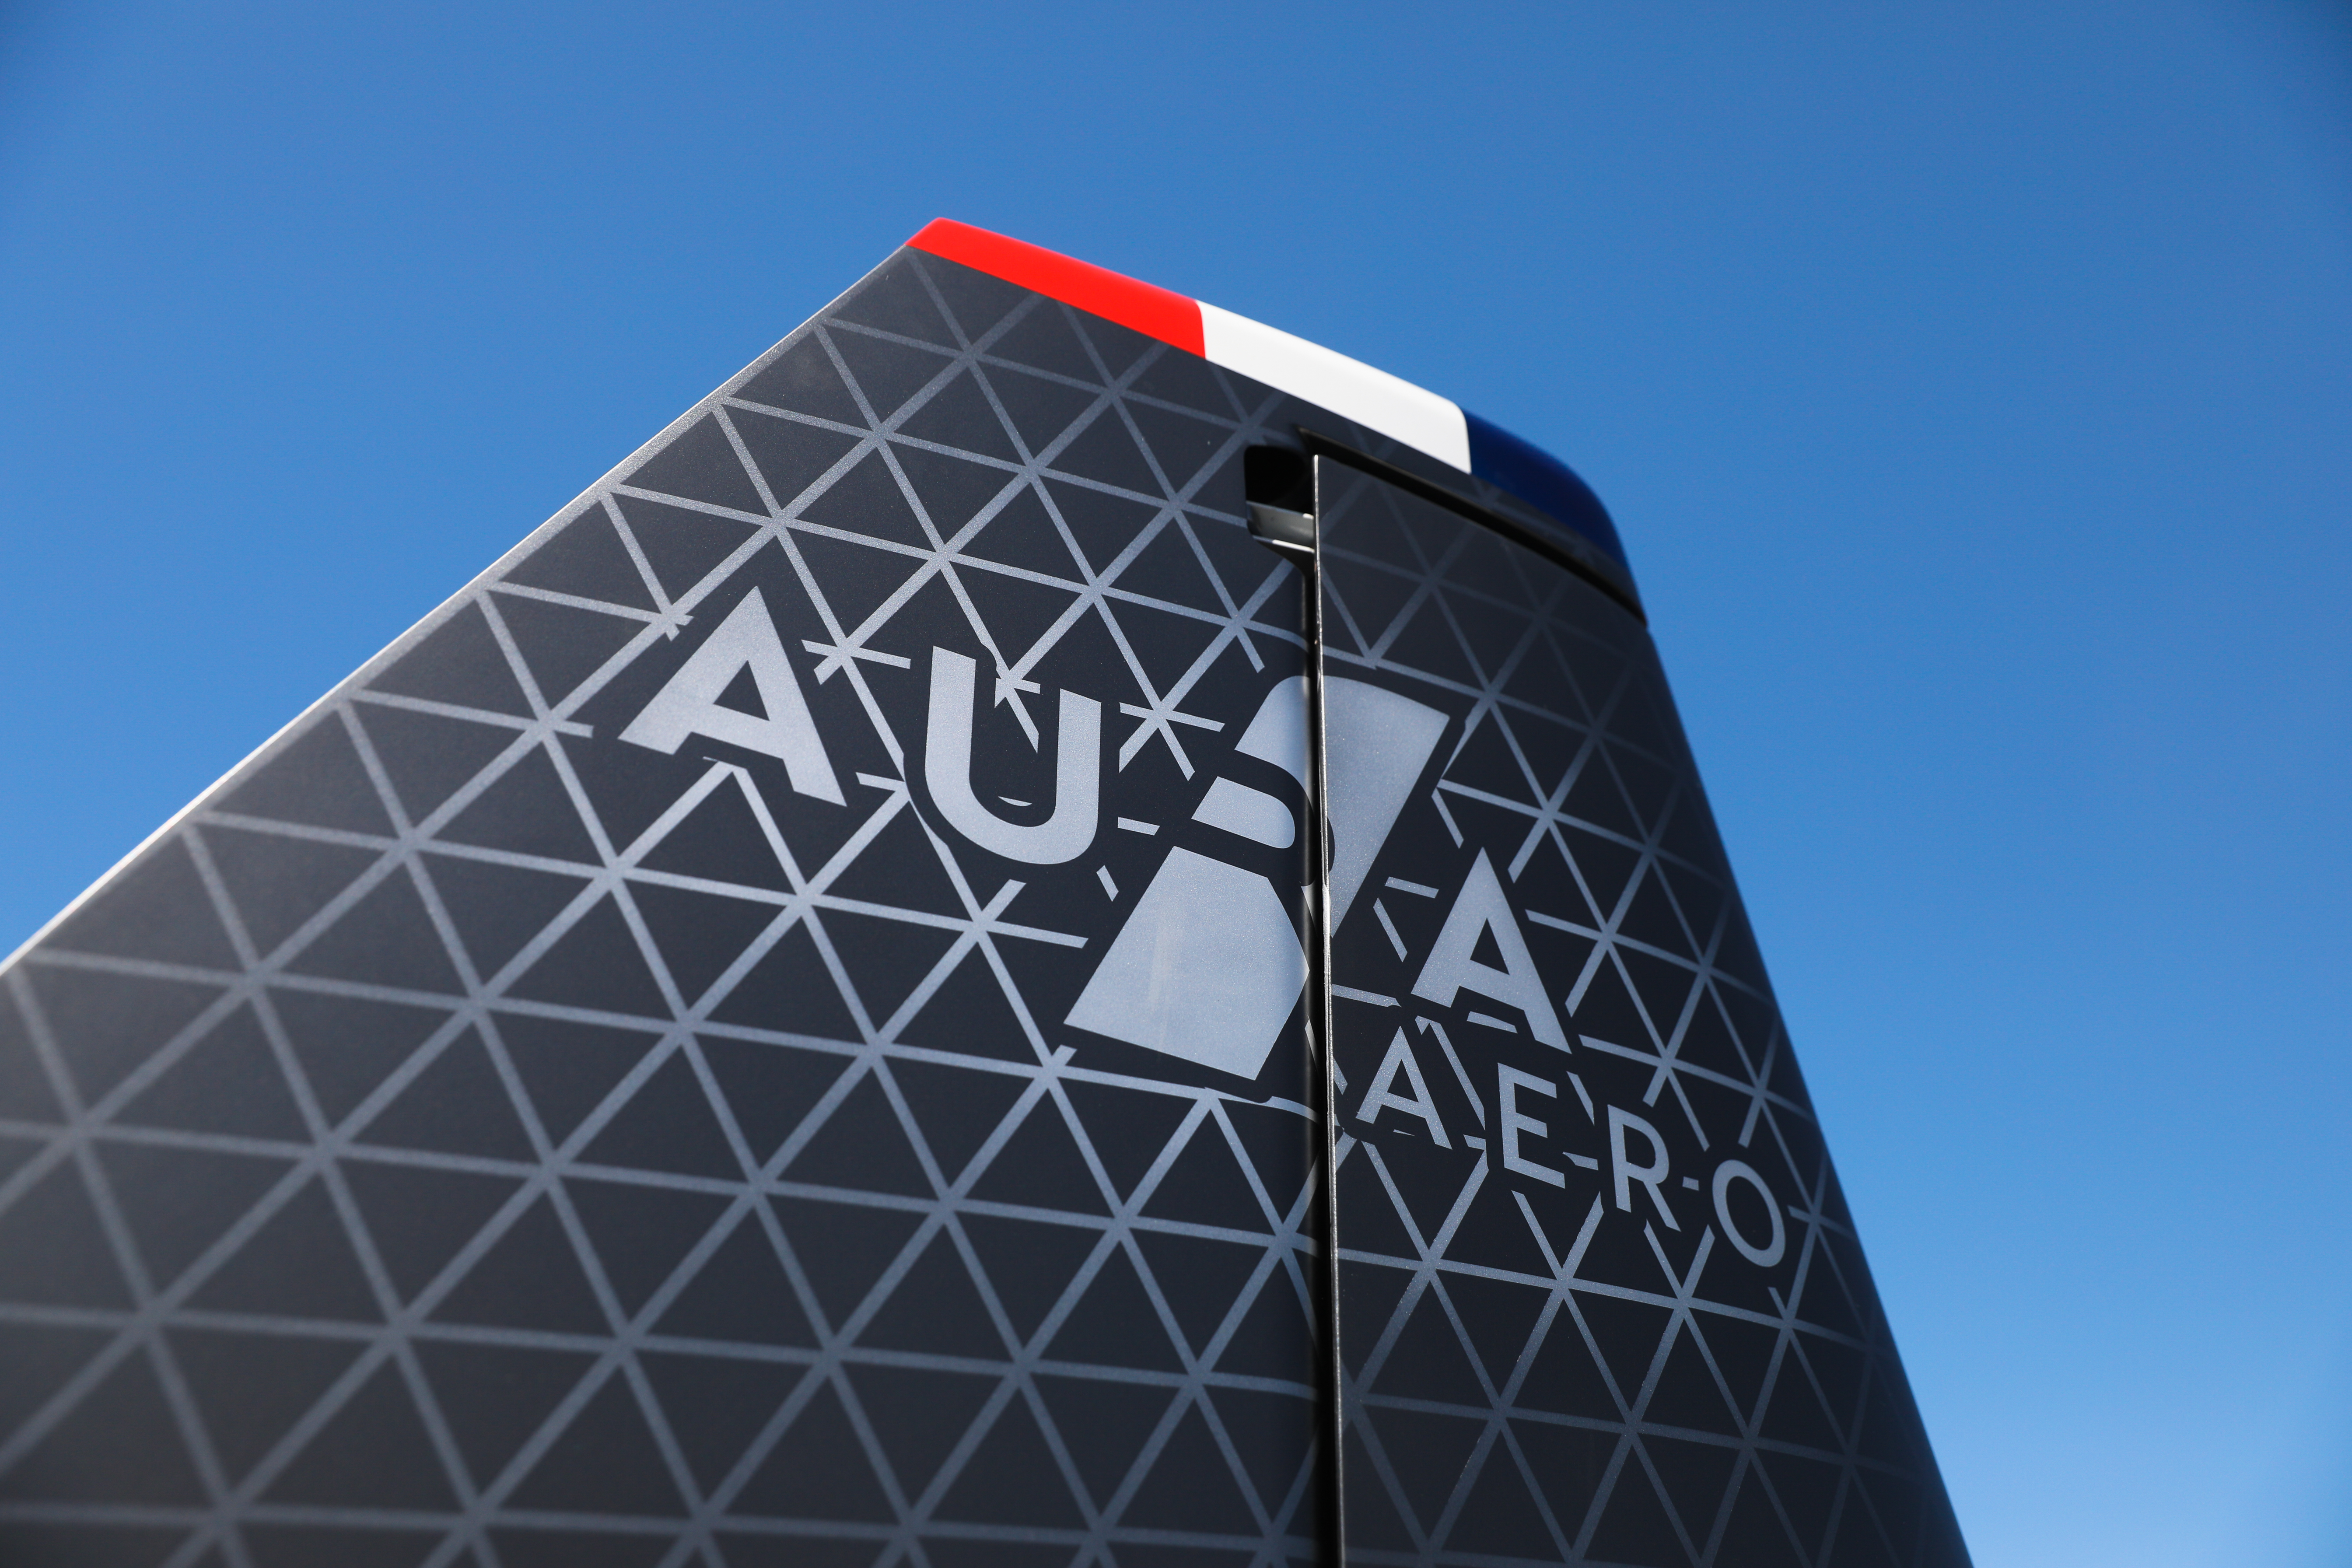 Aura Aero décroche une méga précommande de 200 avions électriques